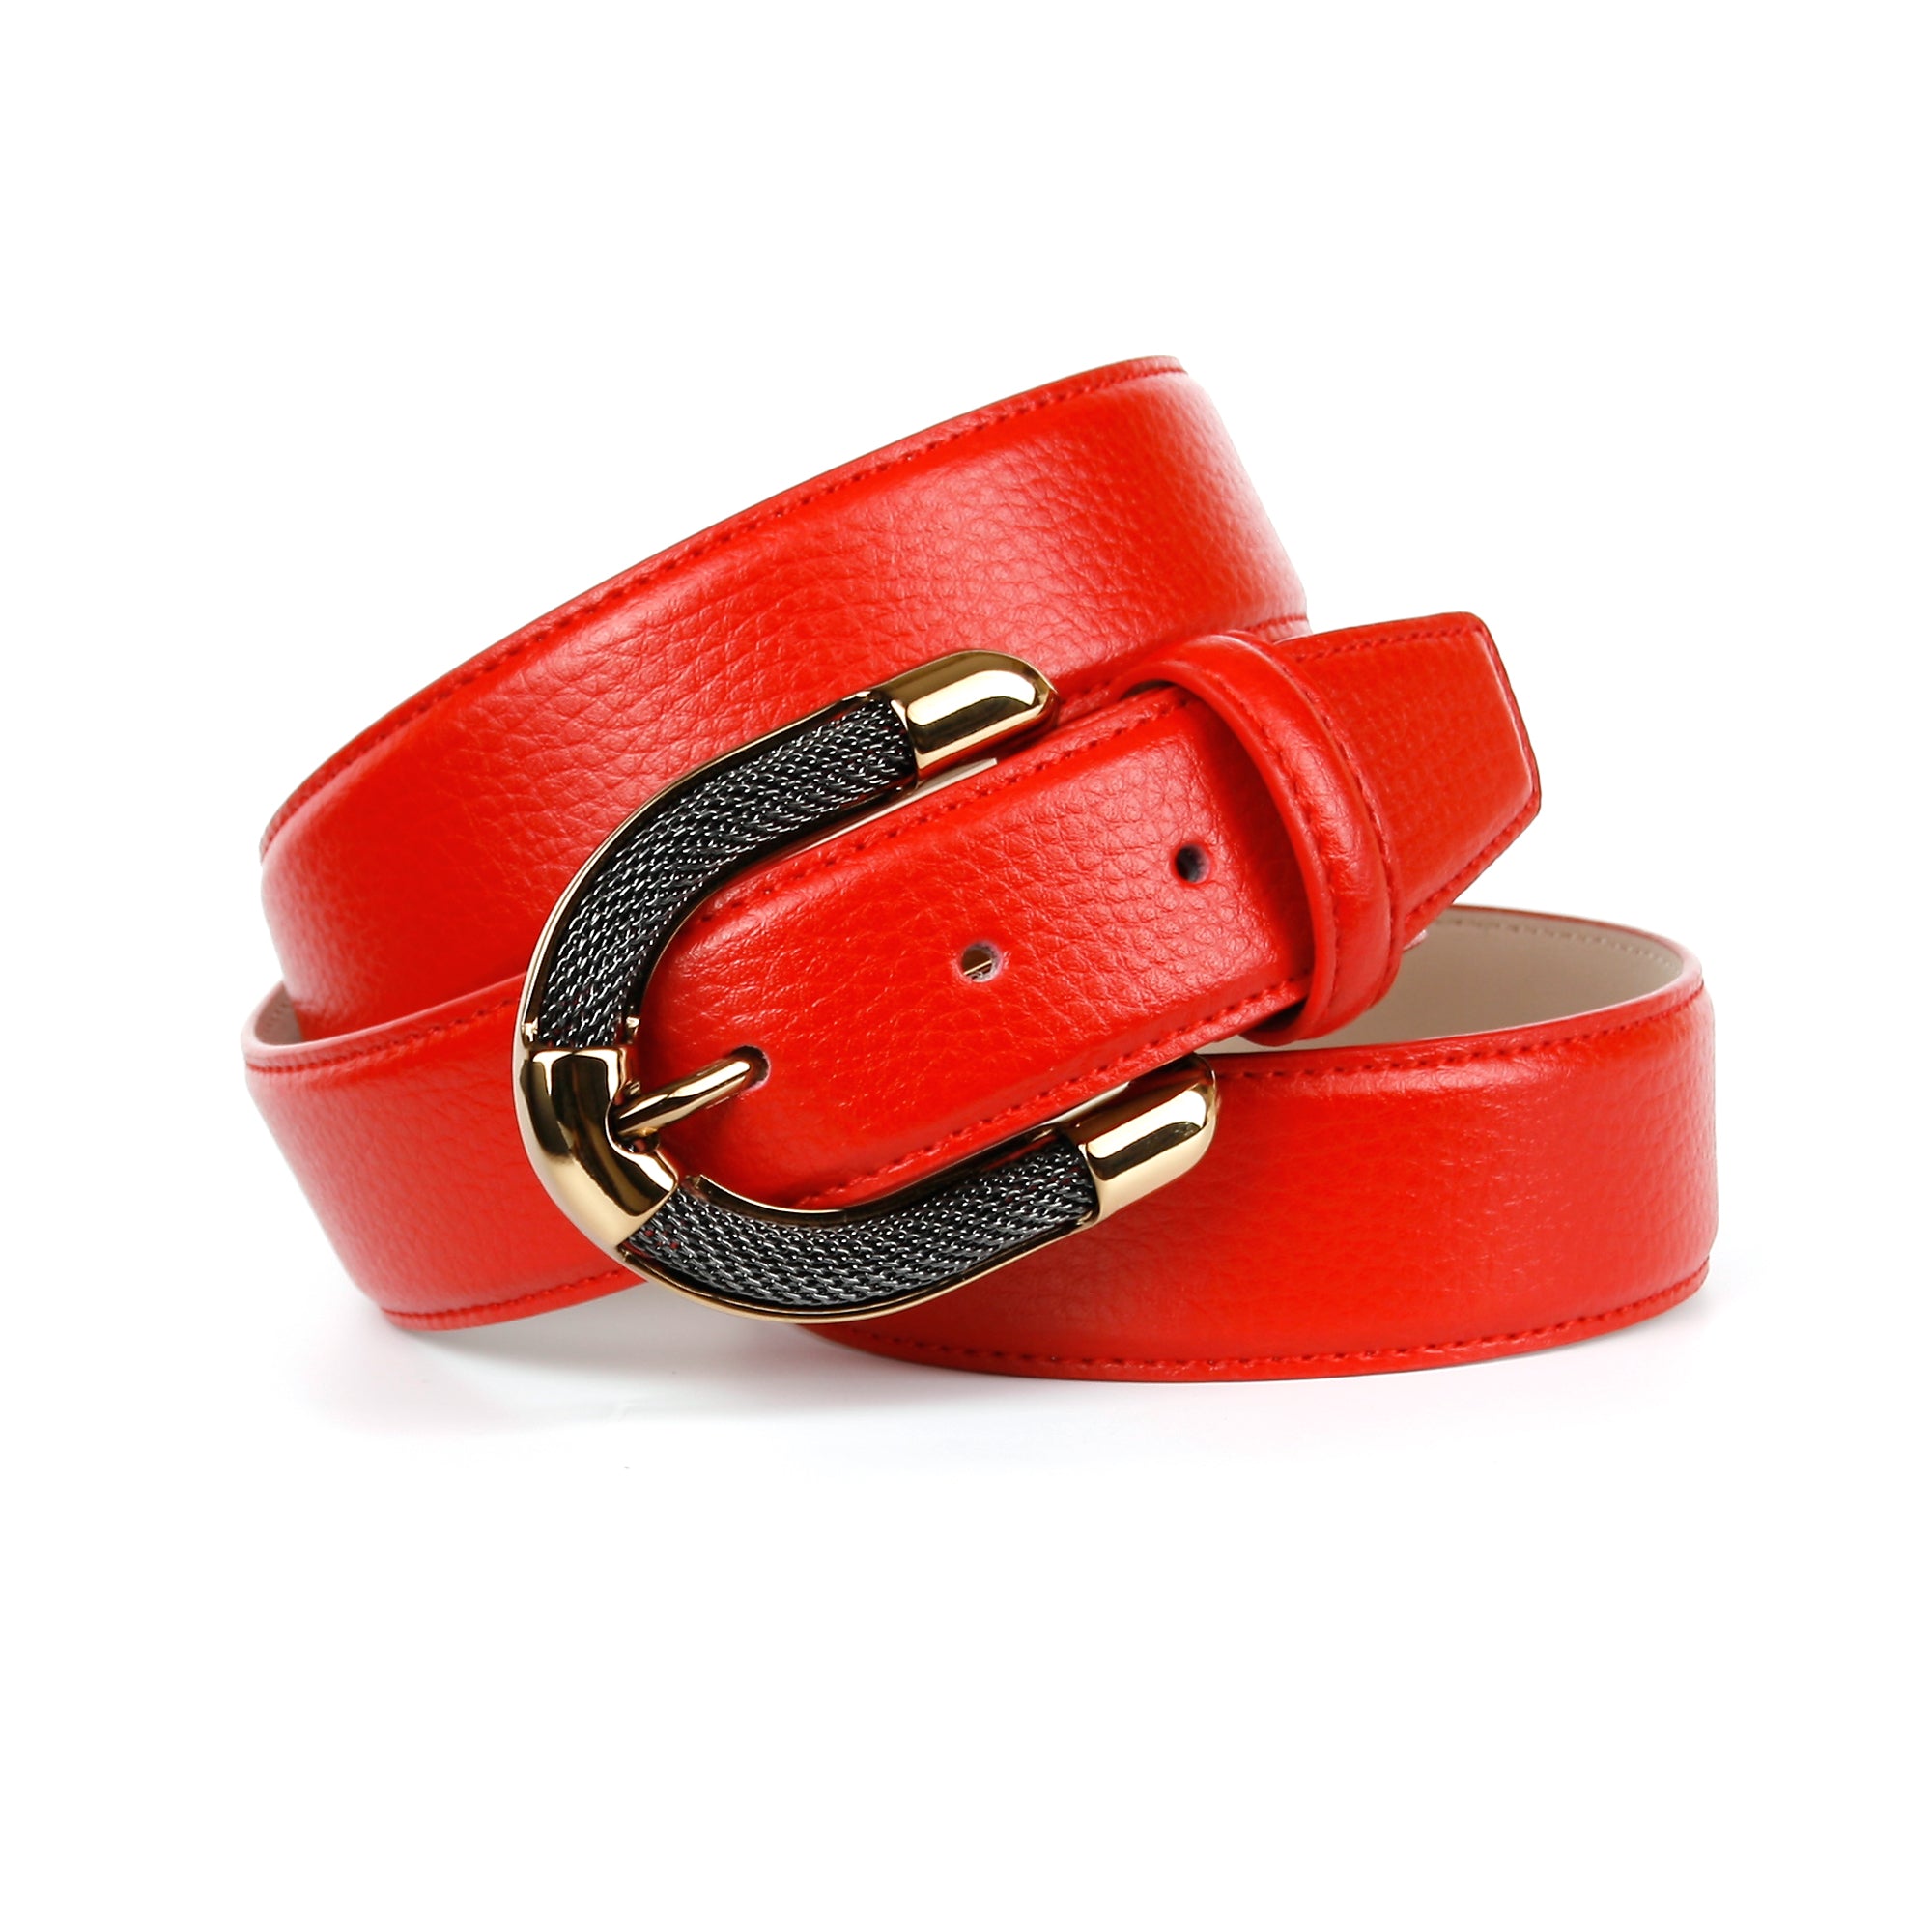 Femininer Ledergürtel in Rot mit – anthonicrown Schmuck-Schließe aufwendiger